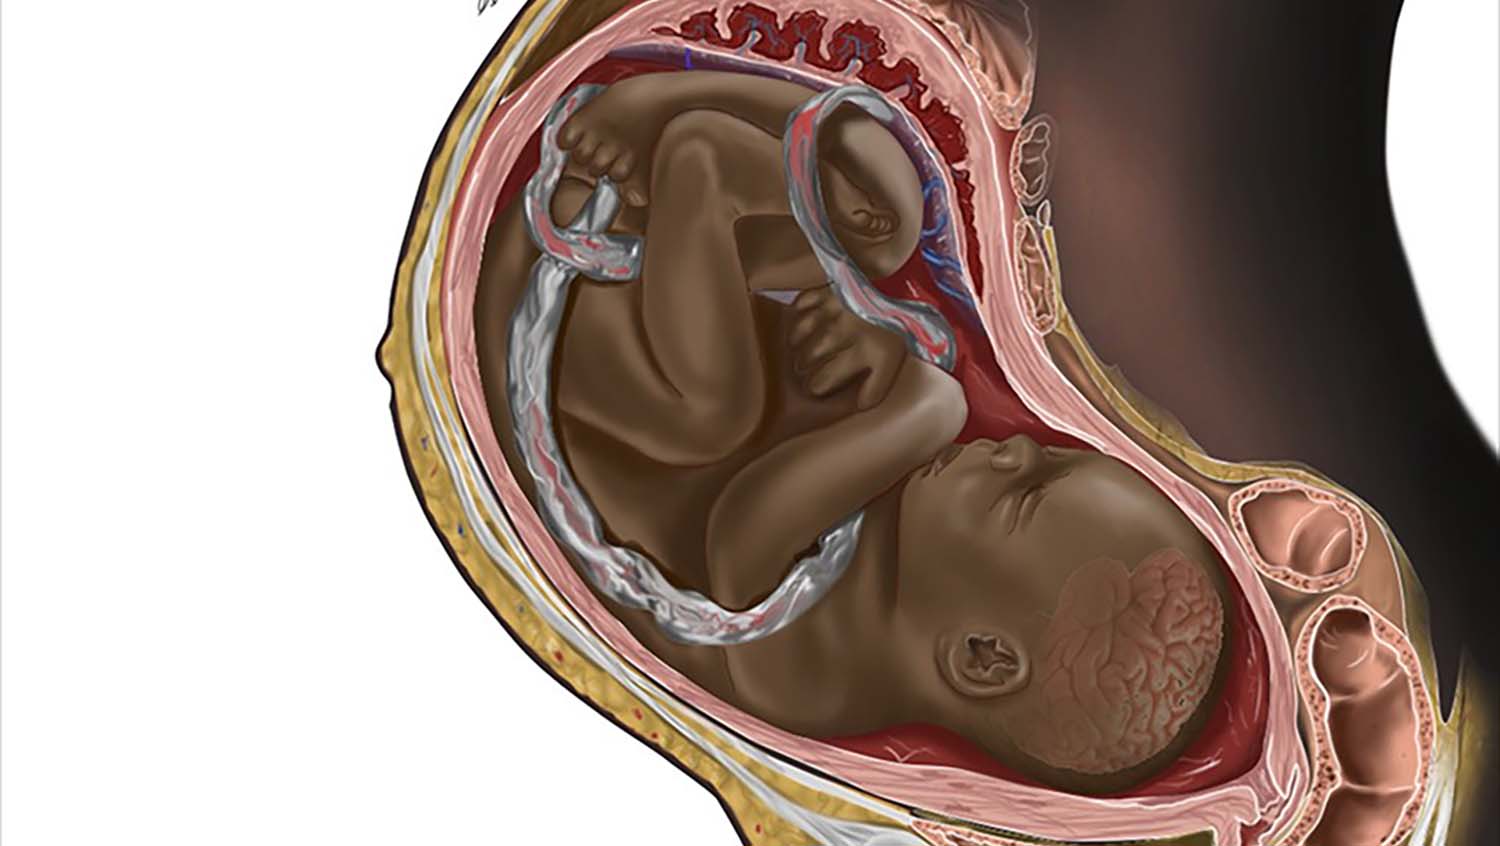 Viral Black Fetus Image Blends Art and Activism